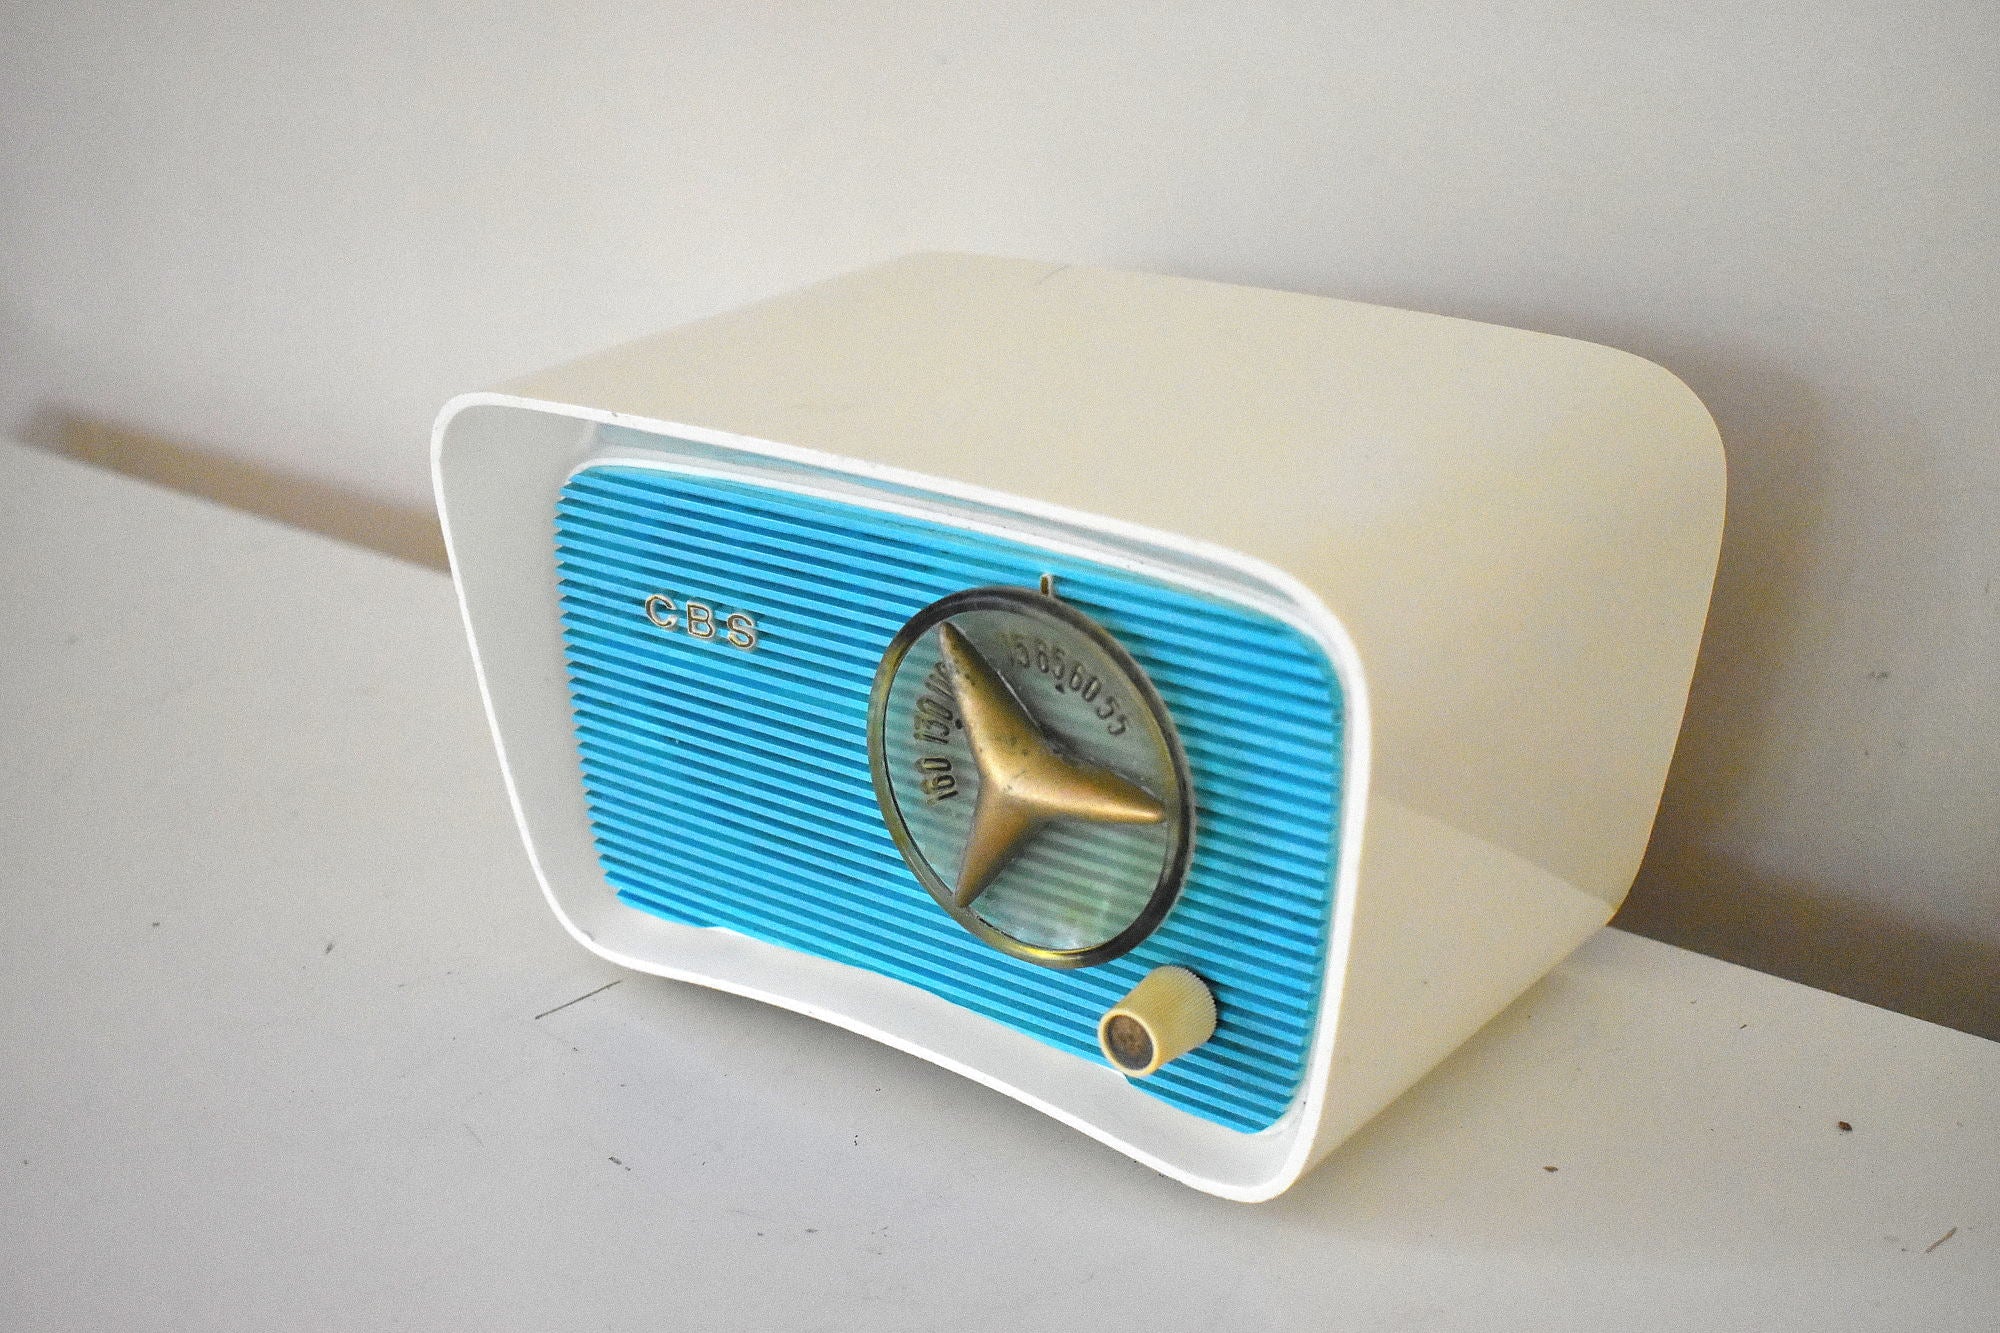 アクア ターコイズとホワイト 1959 CBS モデル 2160 AM 真空管ラジオ ボタンのようにかわいい、素晴らしいサウンドです。